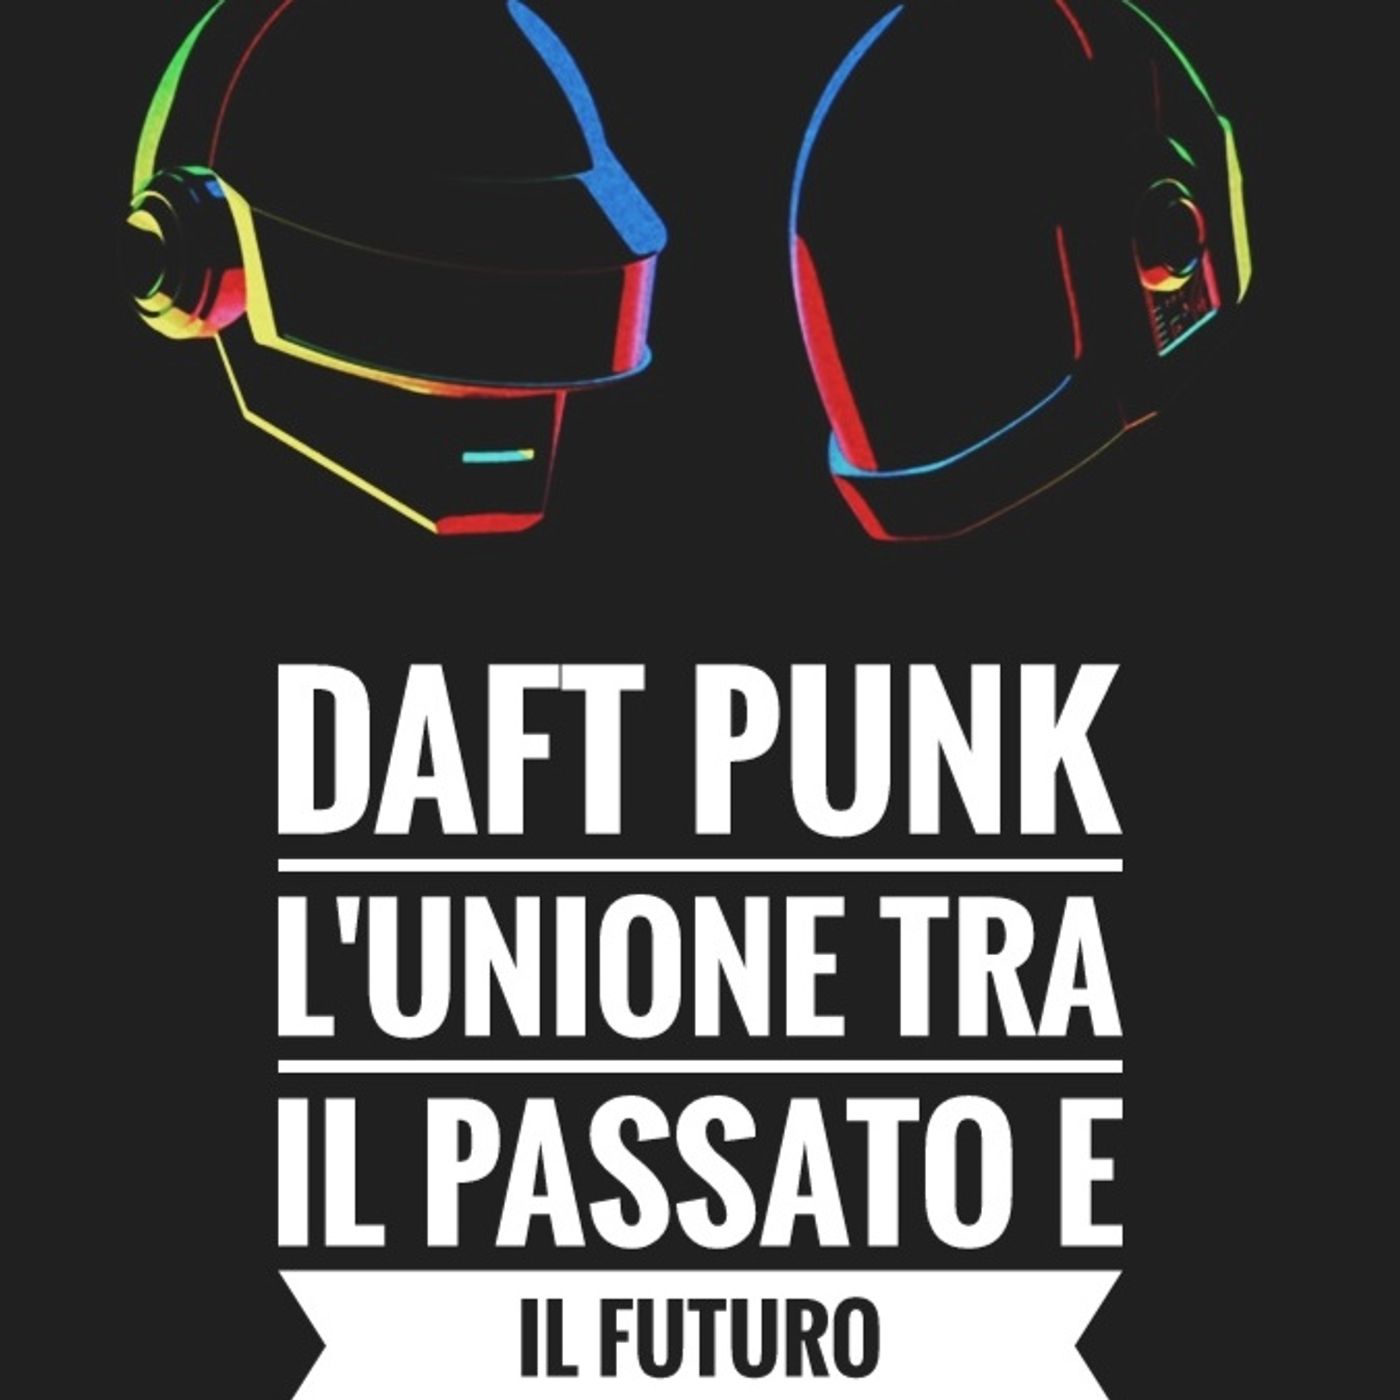 [Mono] Daft Punk: l'unione tra il passato e il futuro - Propaganda s4e21